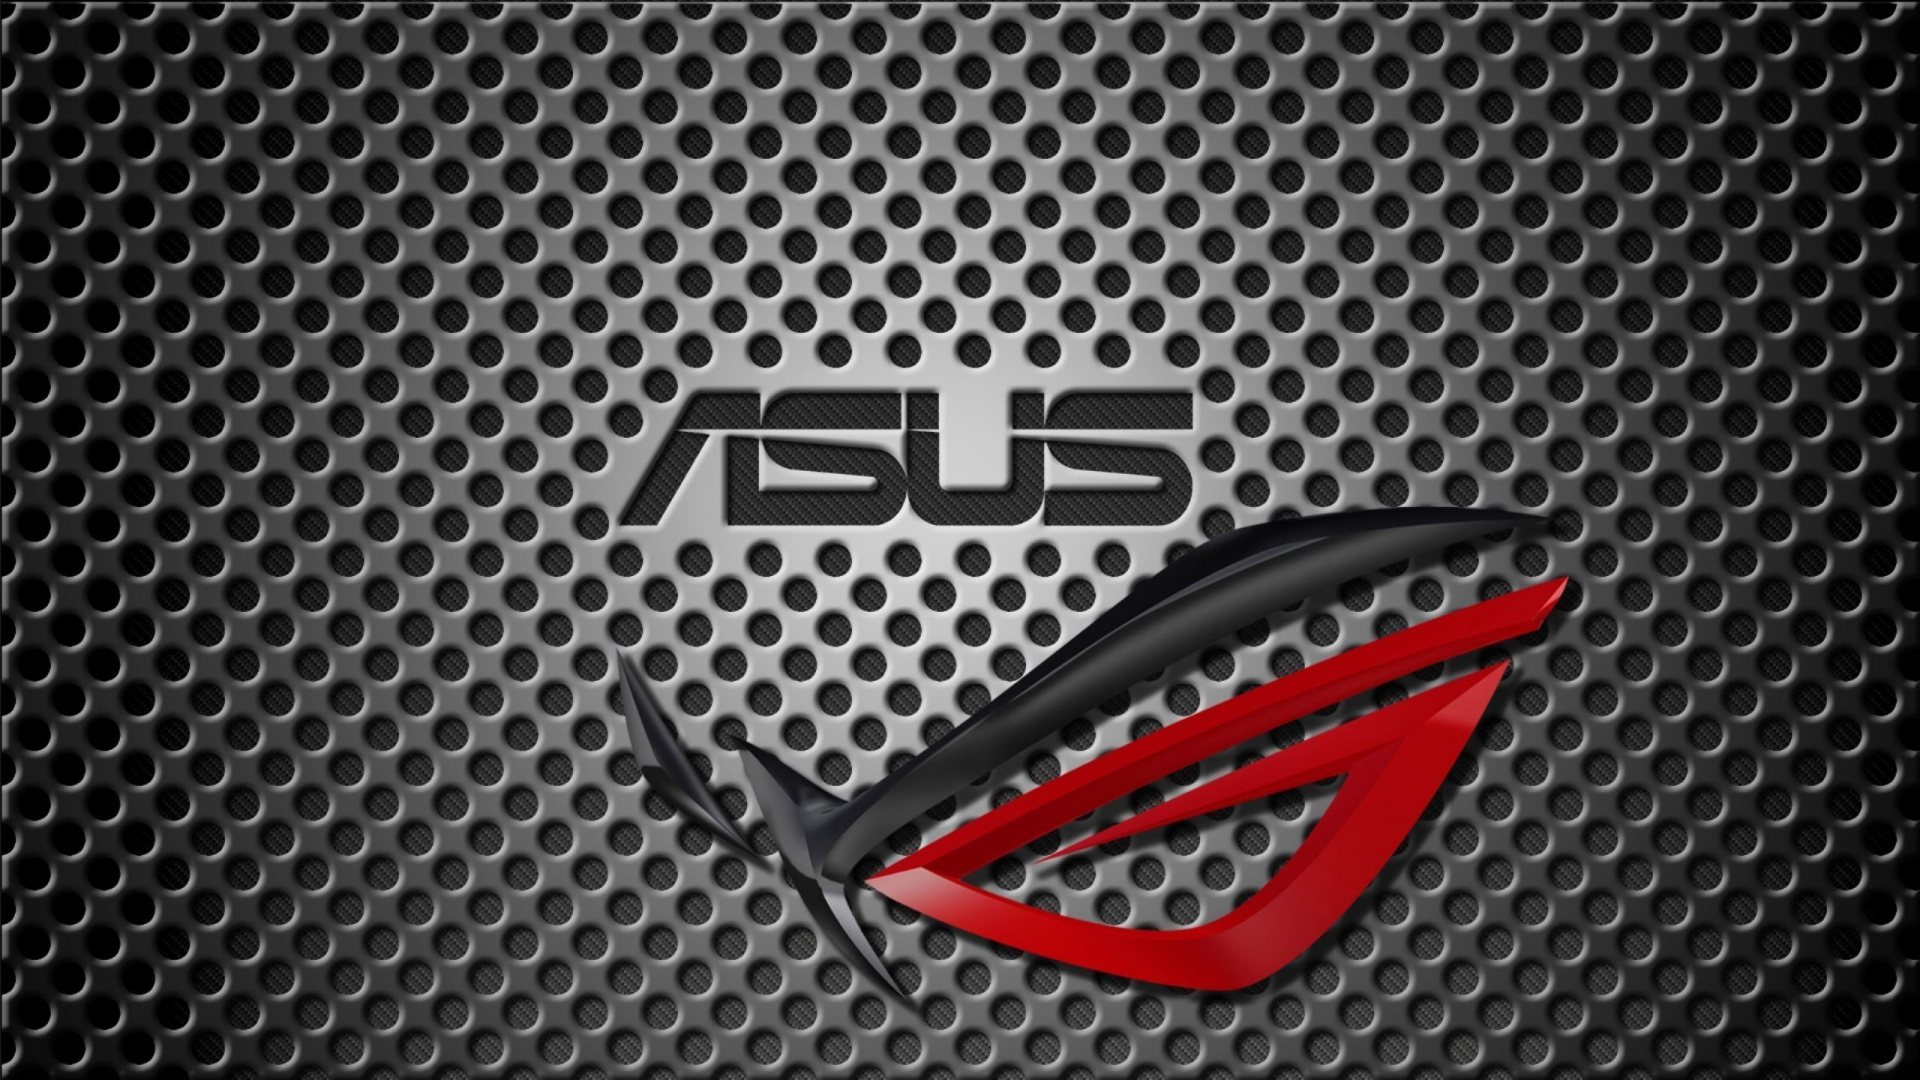 Bạn đang tìm kiếm một hình nền miễn phí đẹp cho Asus của mình? Tại sao không tải ngay hình nền Asus miễn phí để cá nhân hóa màn hình của bạn? Bộ sưu tập đa dạng với rất nhiều hình nền đẹp và phù hợp cho các dòng máy của Asus.